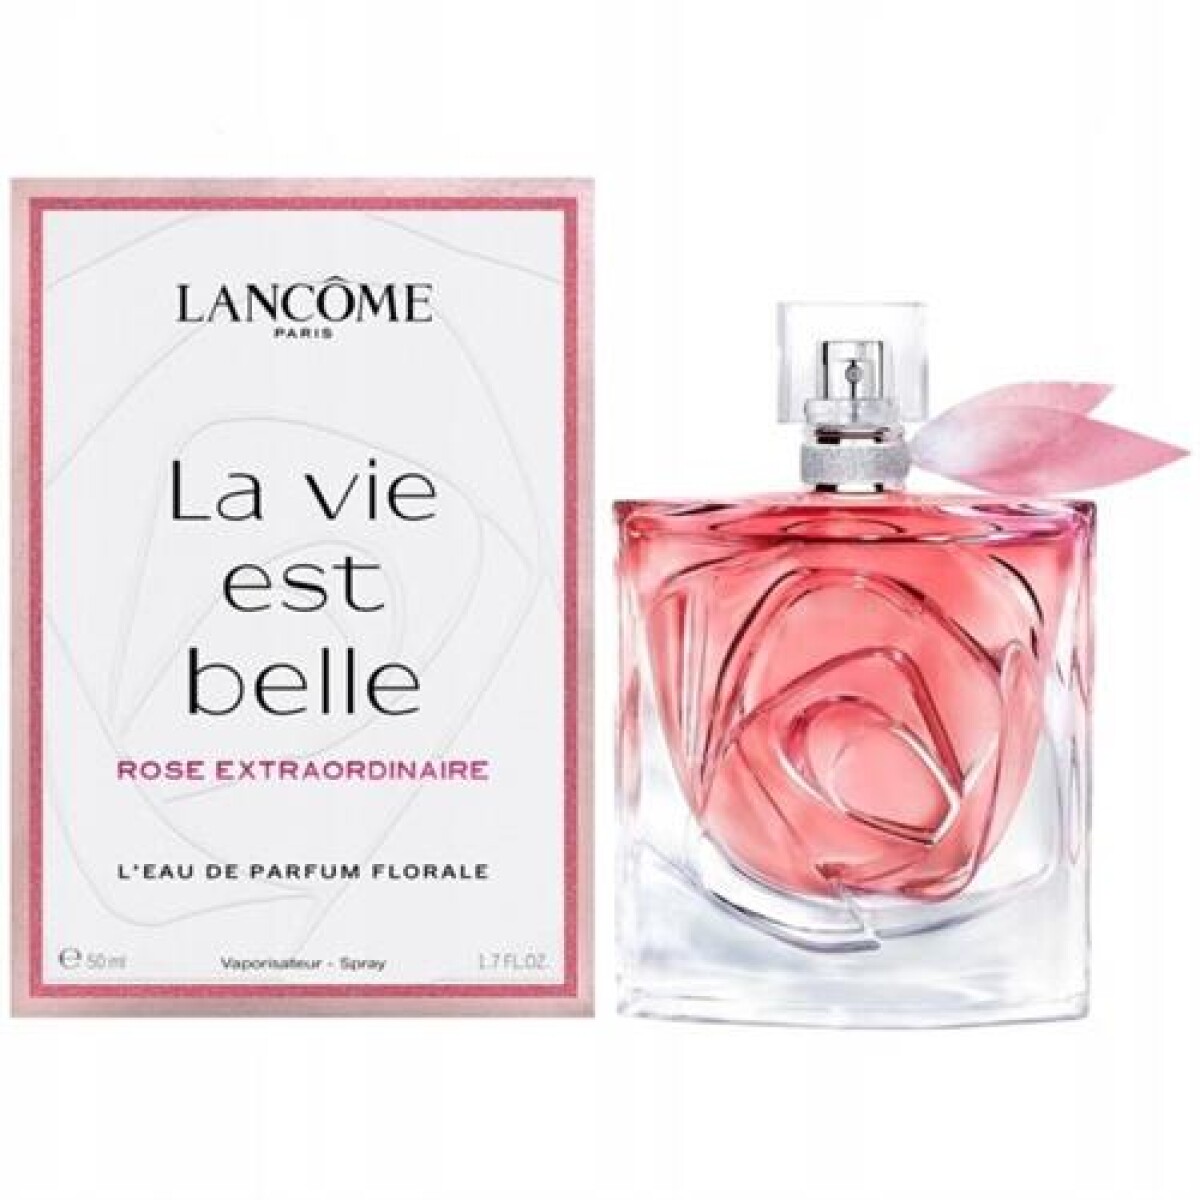 Lancôme Perfume La Vie Est Belle Rose Extraordinaire EDP Florale 50 ml 